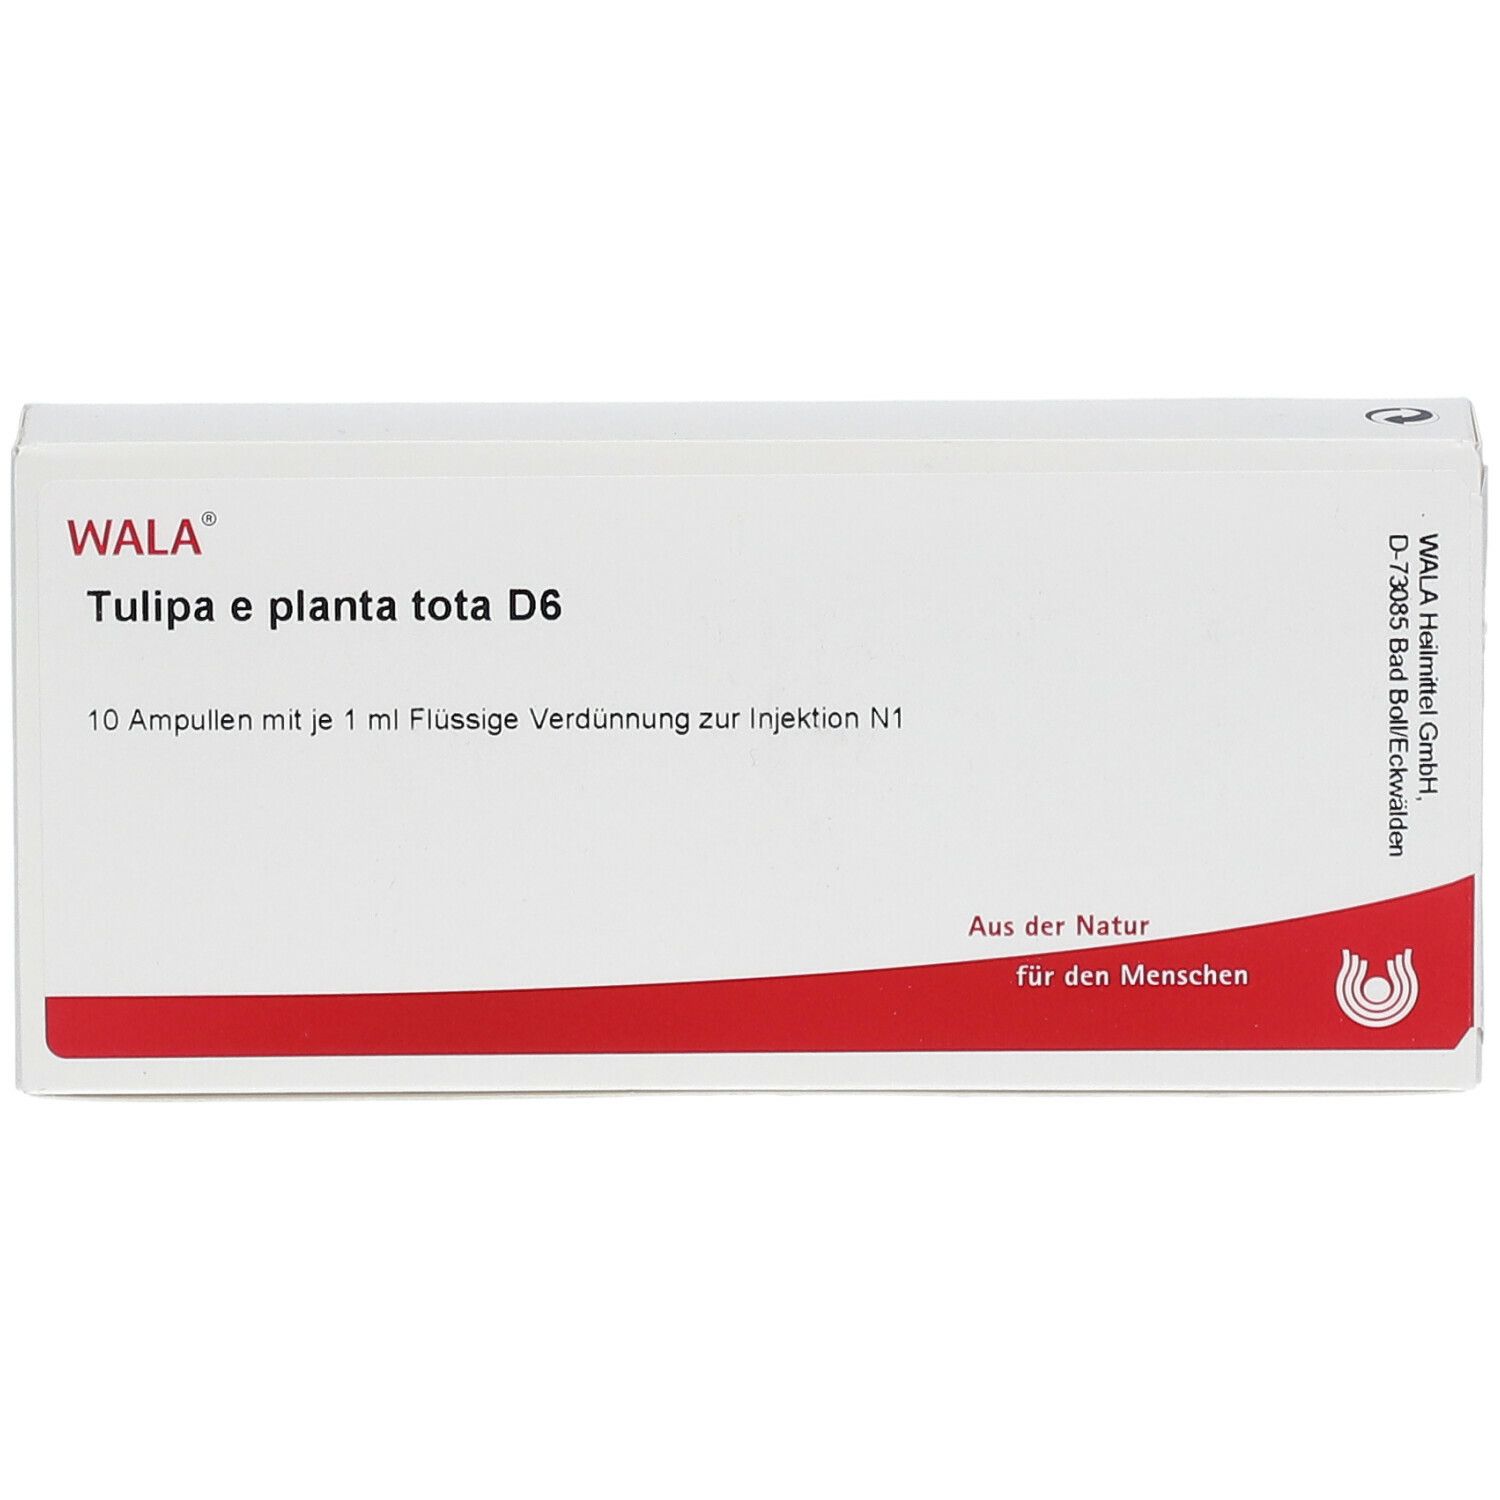 WALA® Tulipa e planta tota D 6